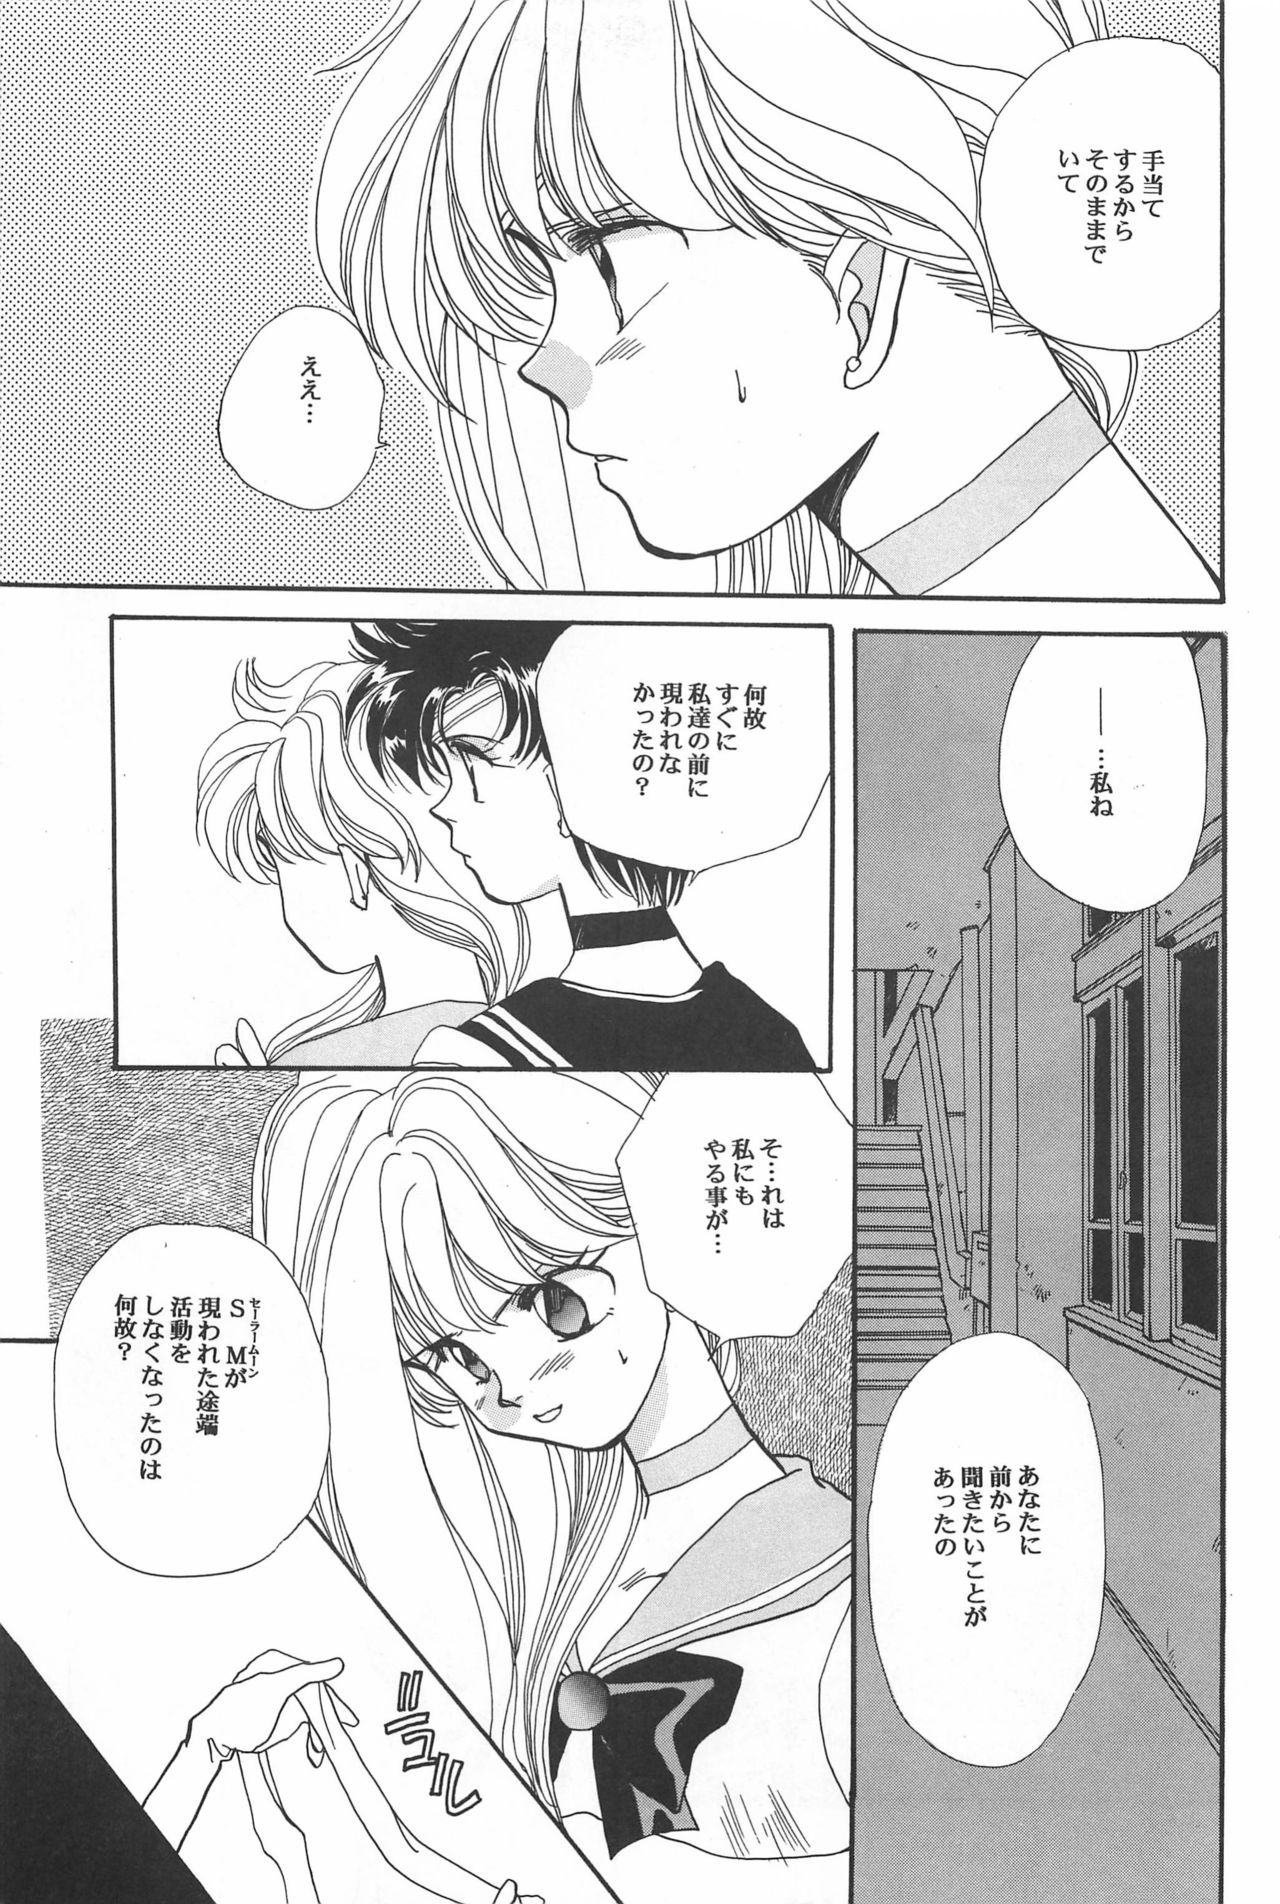 [Hello World (Muttri Moony)] Kaze no You ni Yume no You ni - Sailor Moon Collection (Sailor Moon) 138